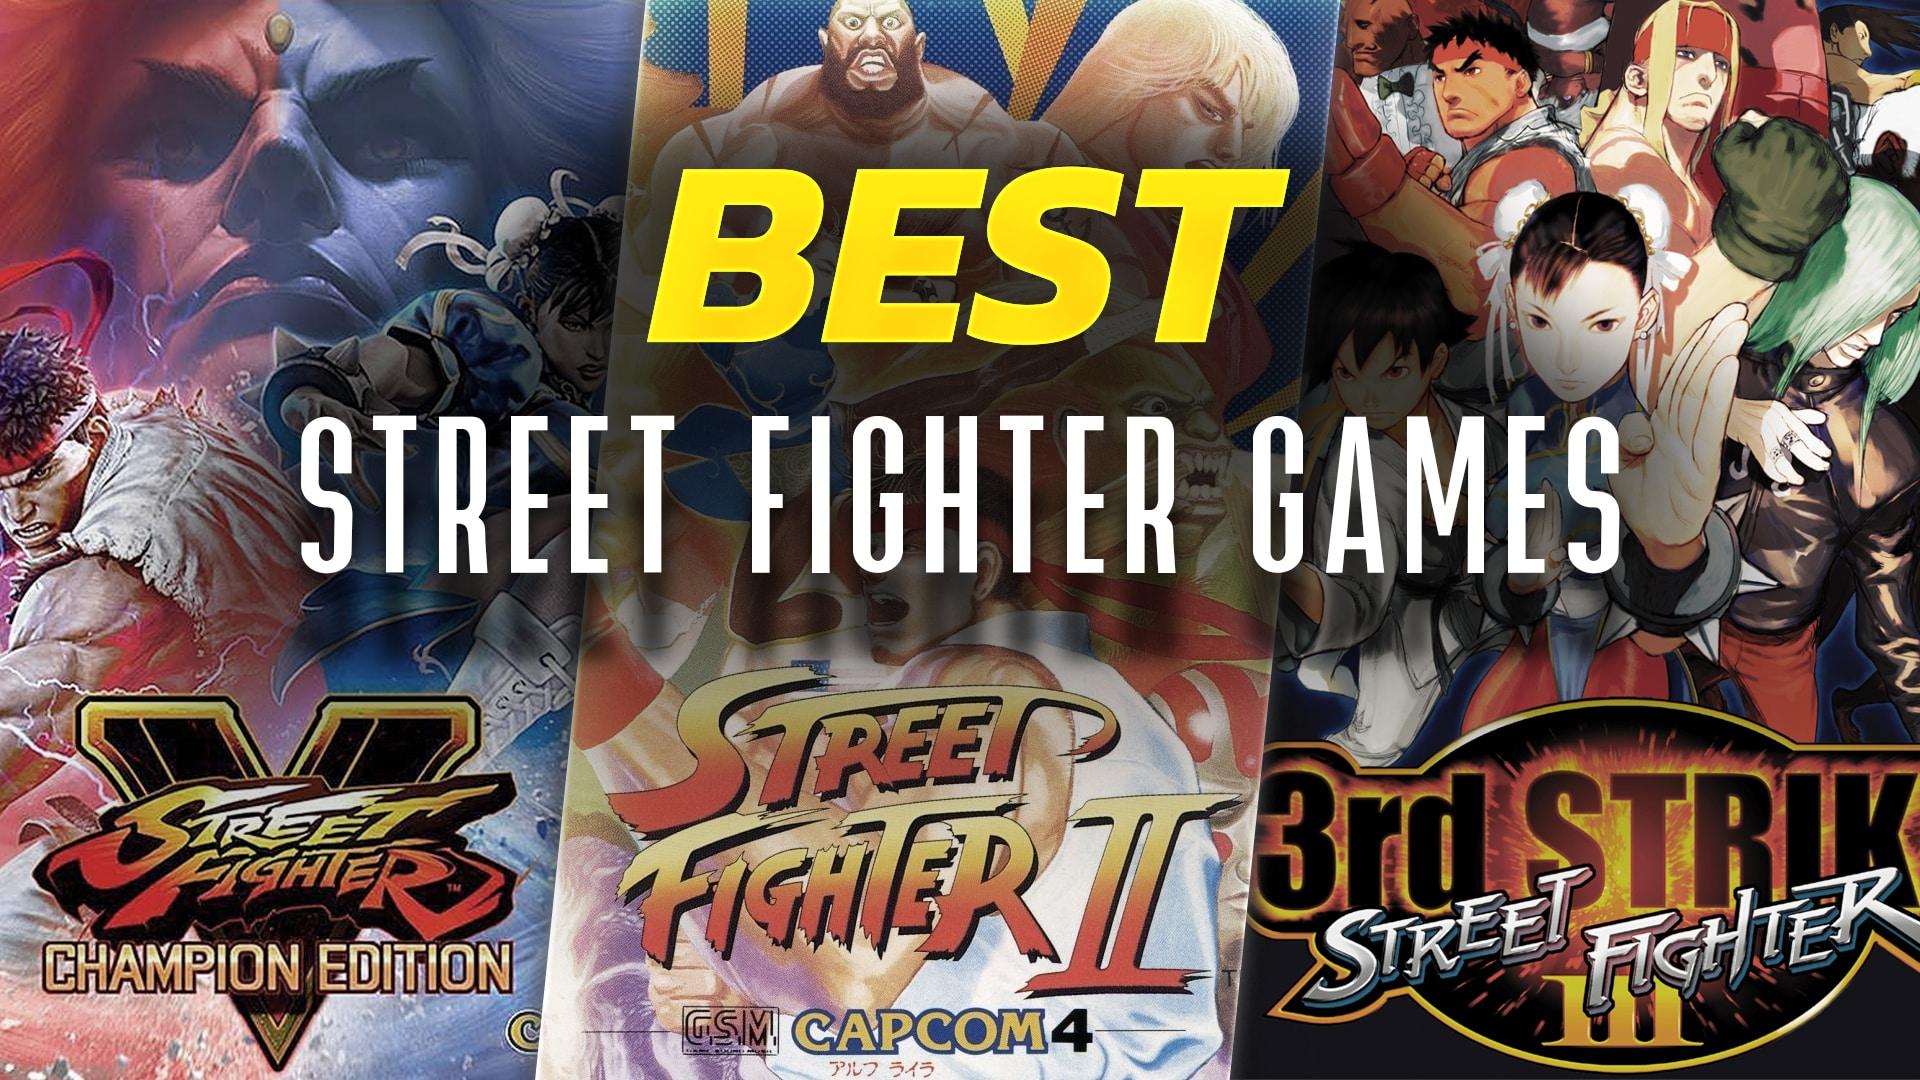 Best Street Fighter games